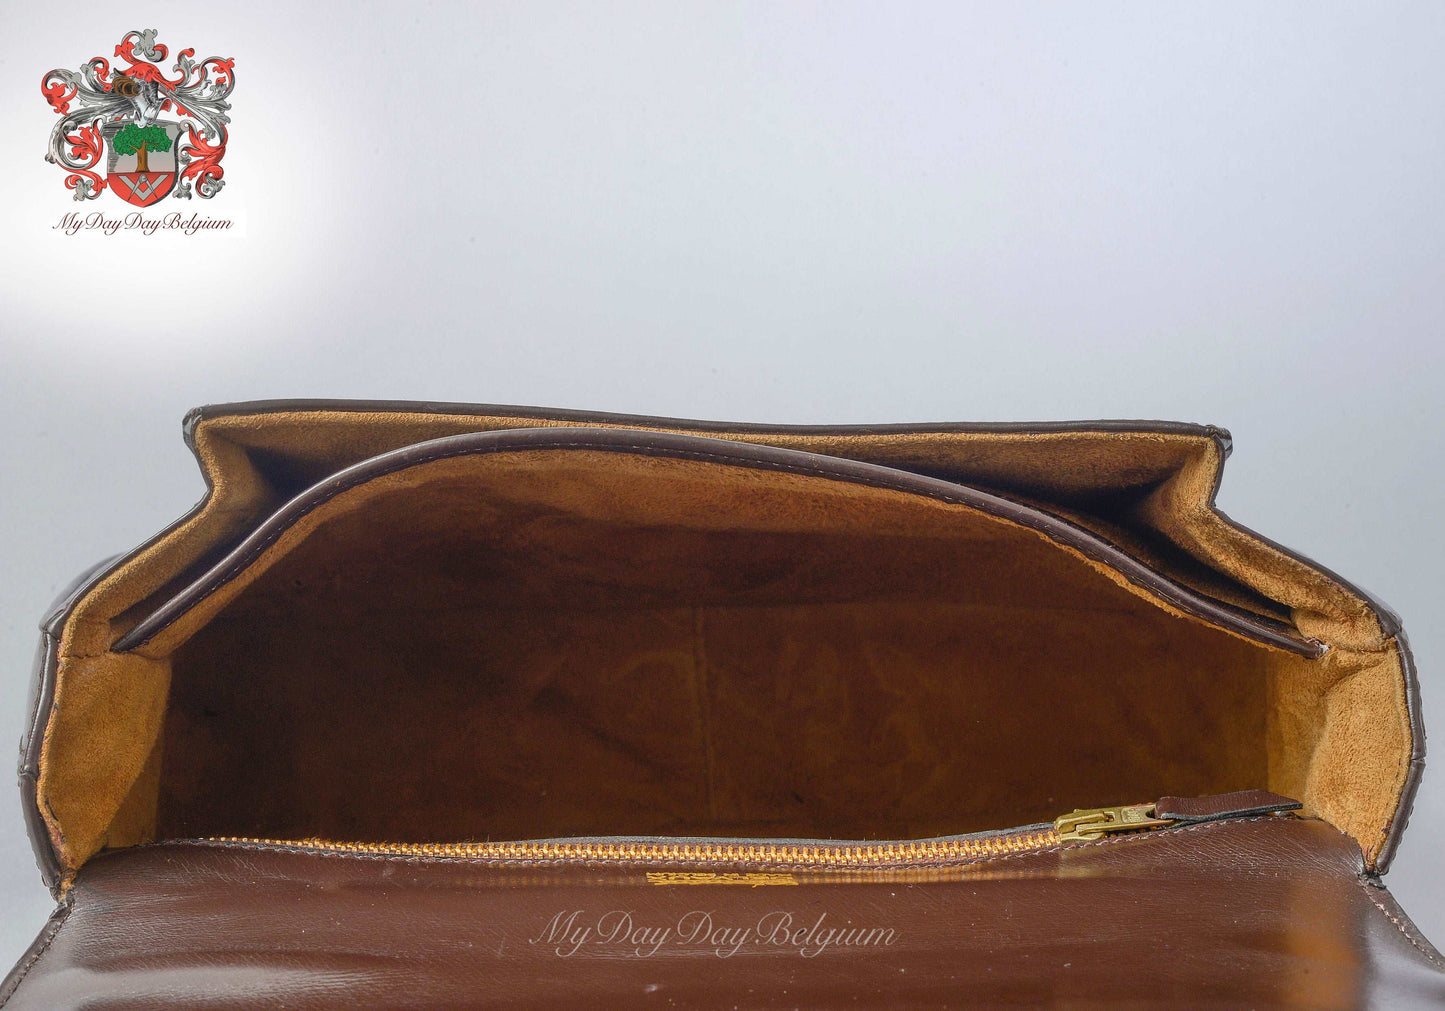 Delvaux vintage handbag 1981